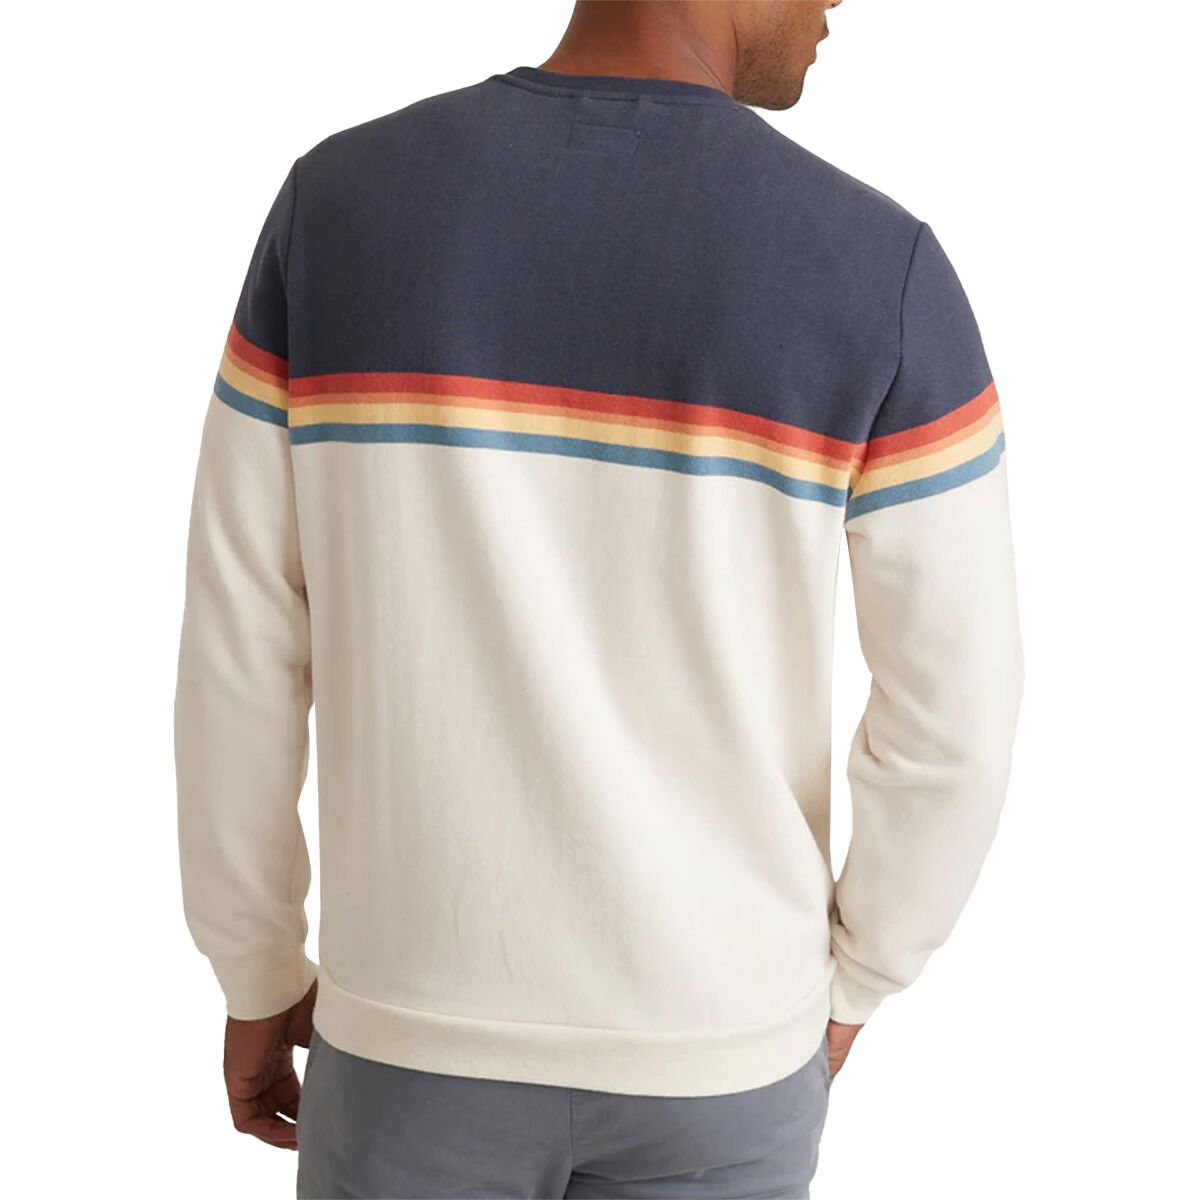 Marine Layer Seam-to-Seam YD Sweatshirt - Men's - Clothing